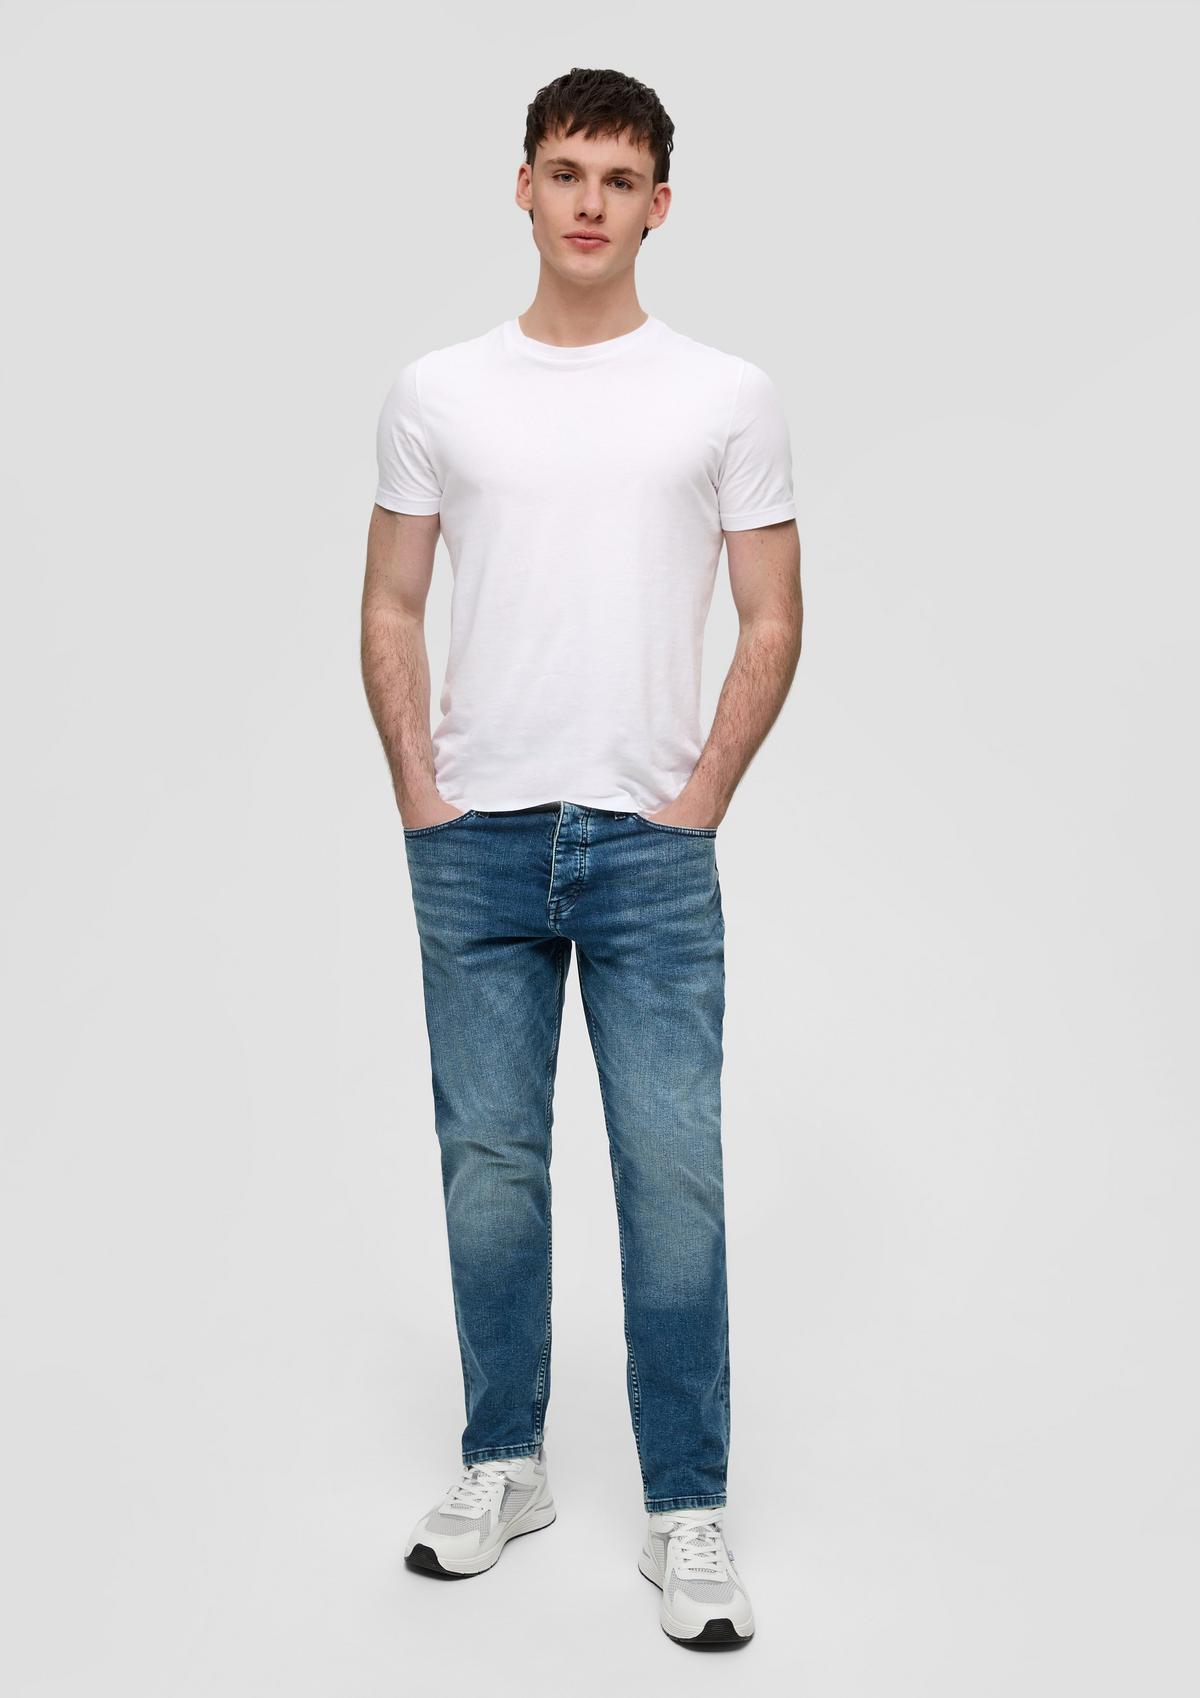 s.Oliver Pete : jean ajustable à la taille